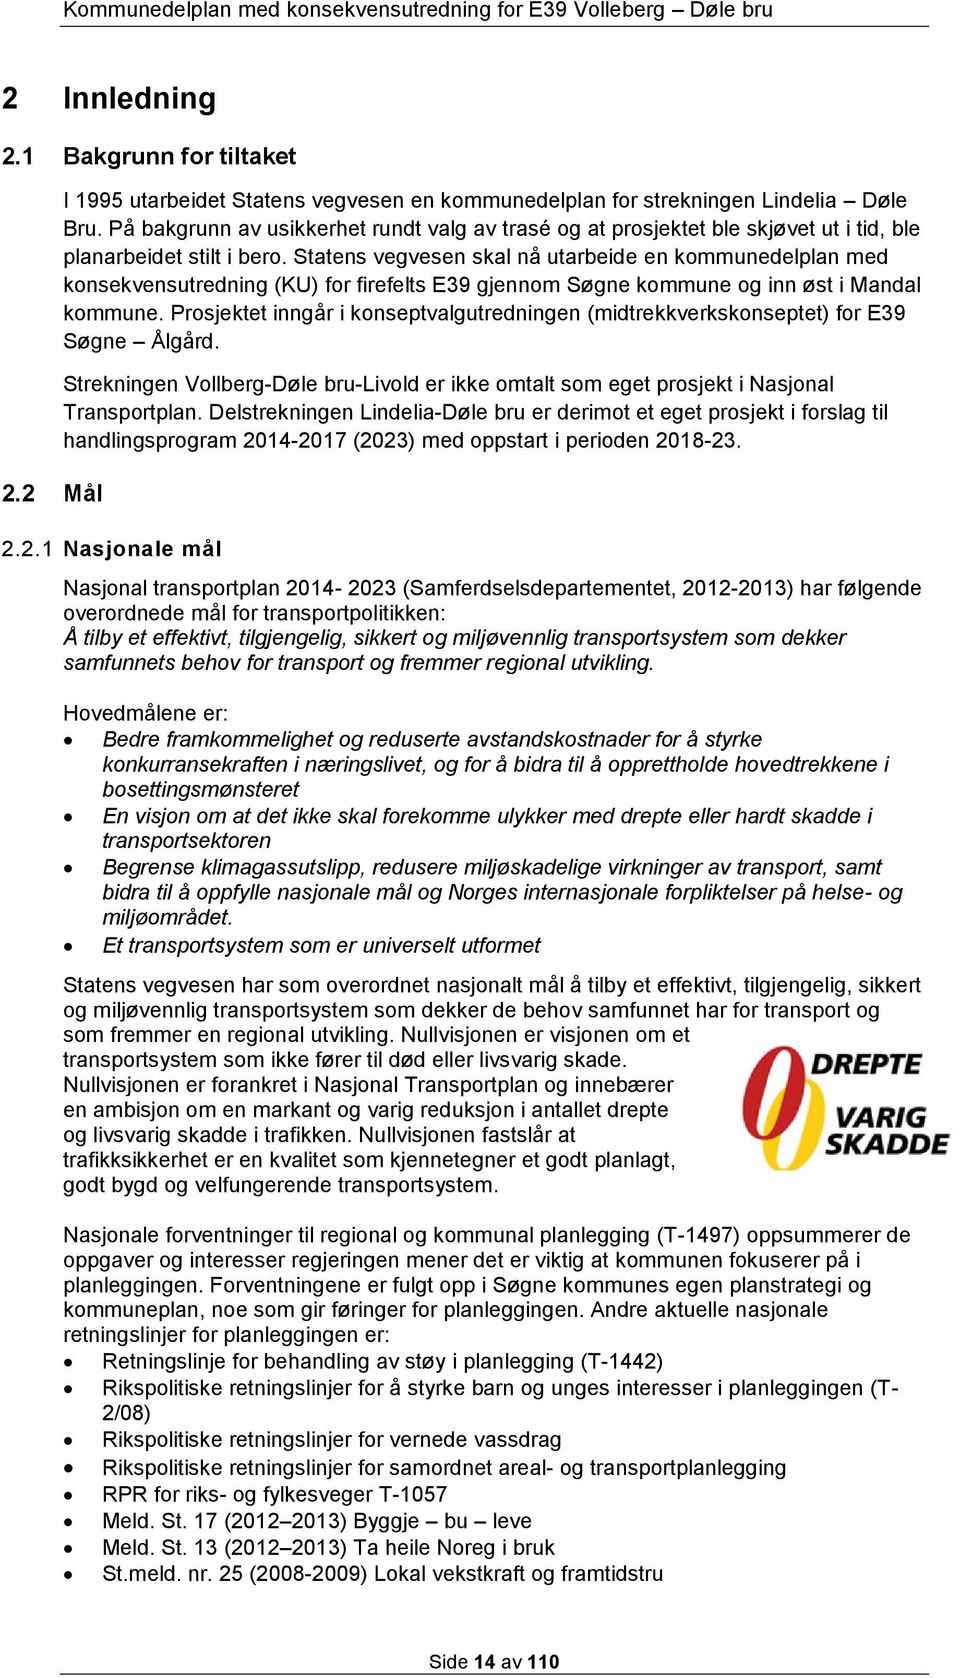 Statens vegvesen skal nå utarbeide en kommunedelplan med konsekvensutredning (KU) for firefelts E39 gjennom Søgne kommune og inn øst i Mandal kommune.